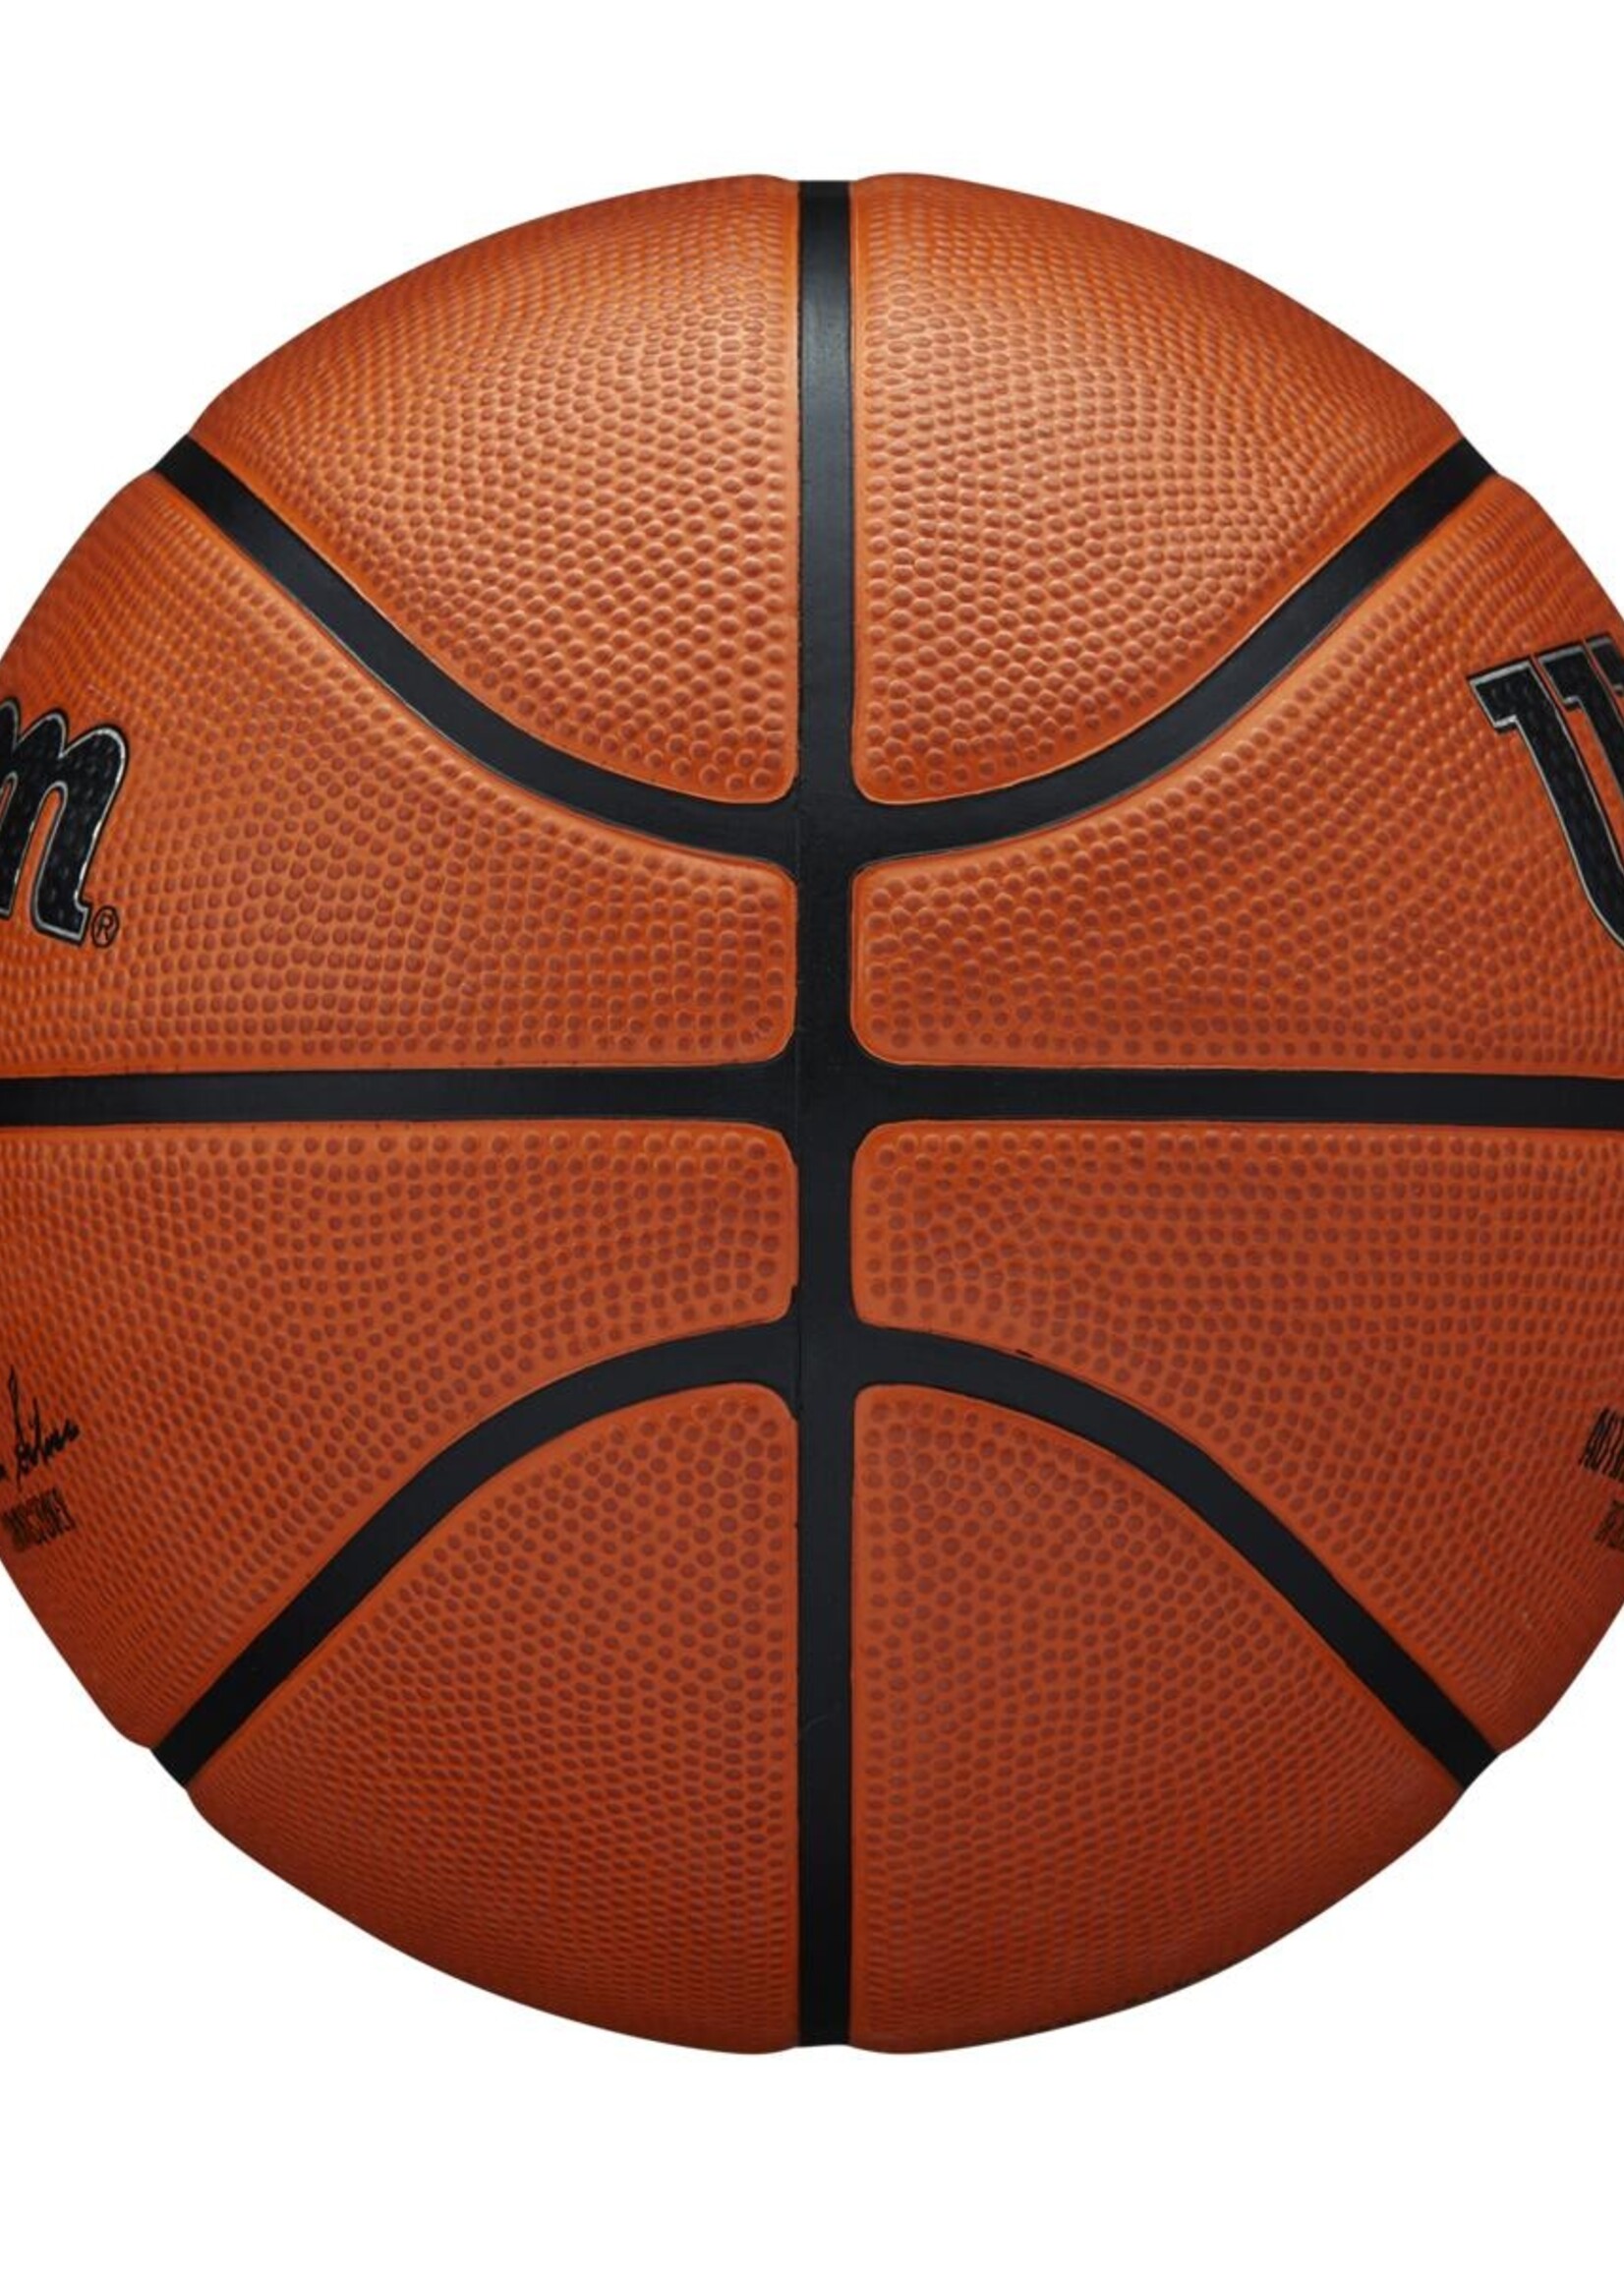 Wilson Wilson NBA Authentic Series Outdoor Ballon De Basket (7)